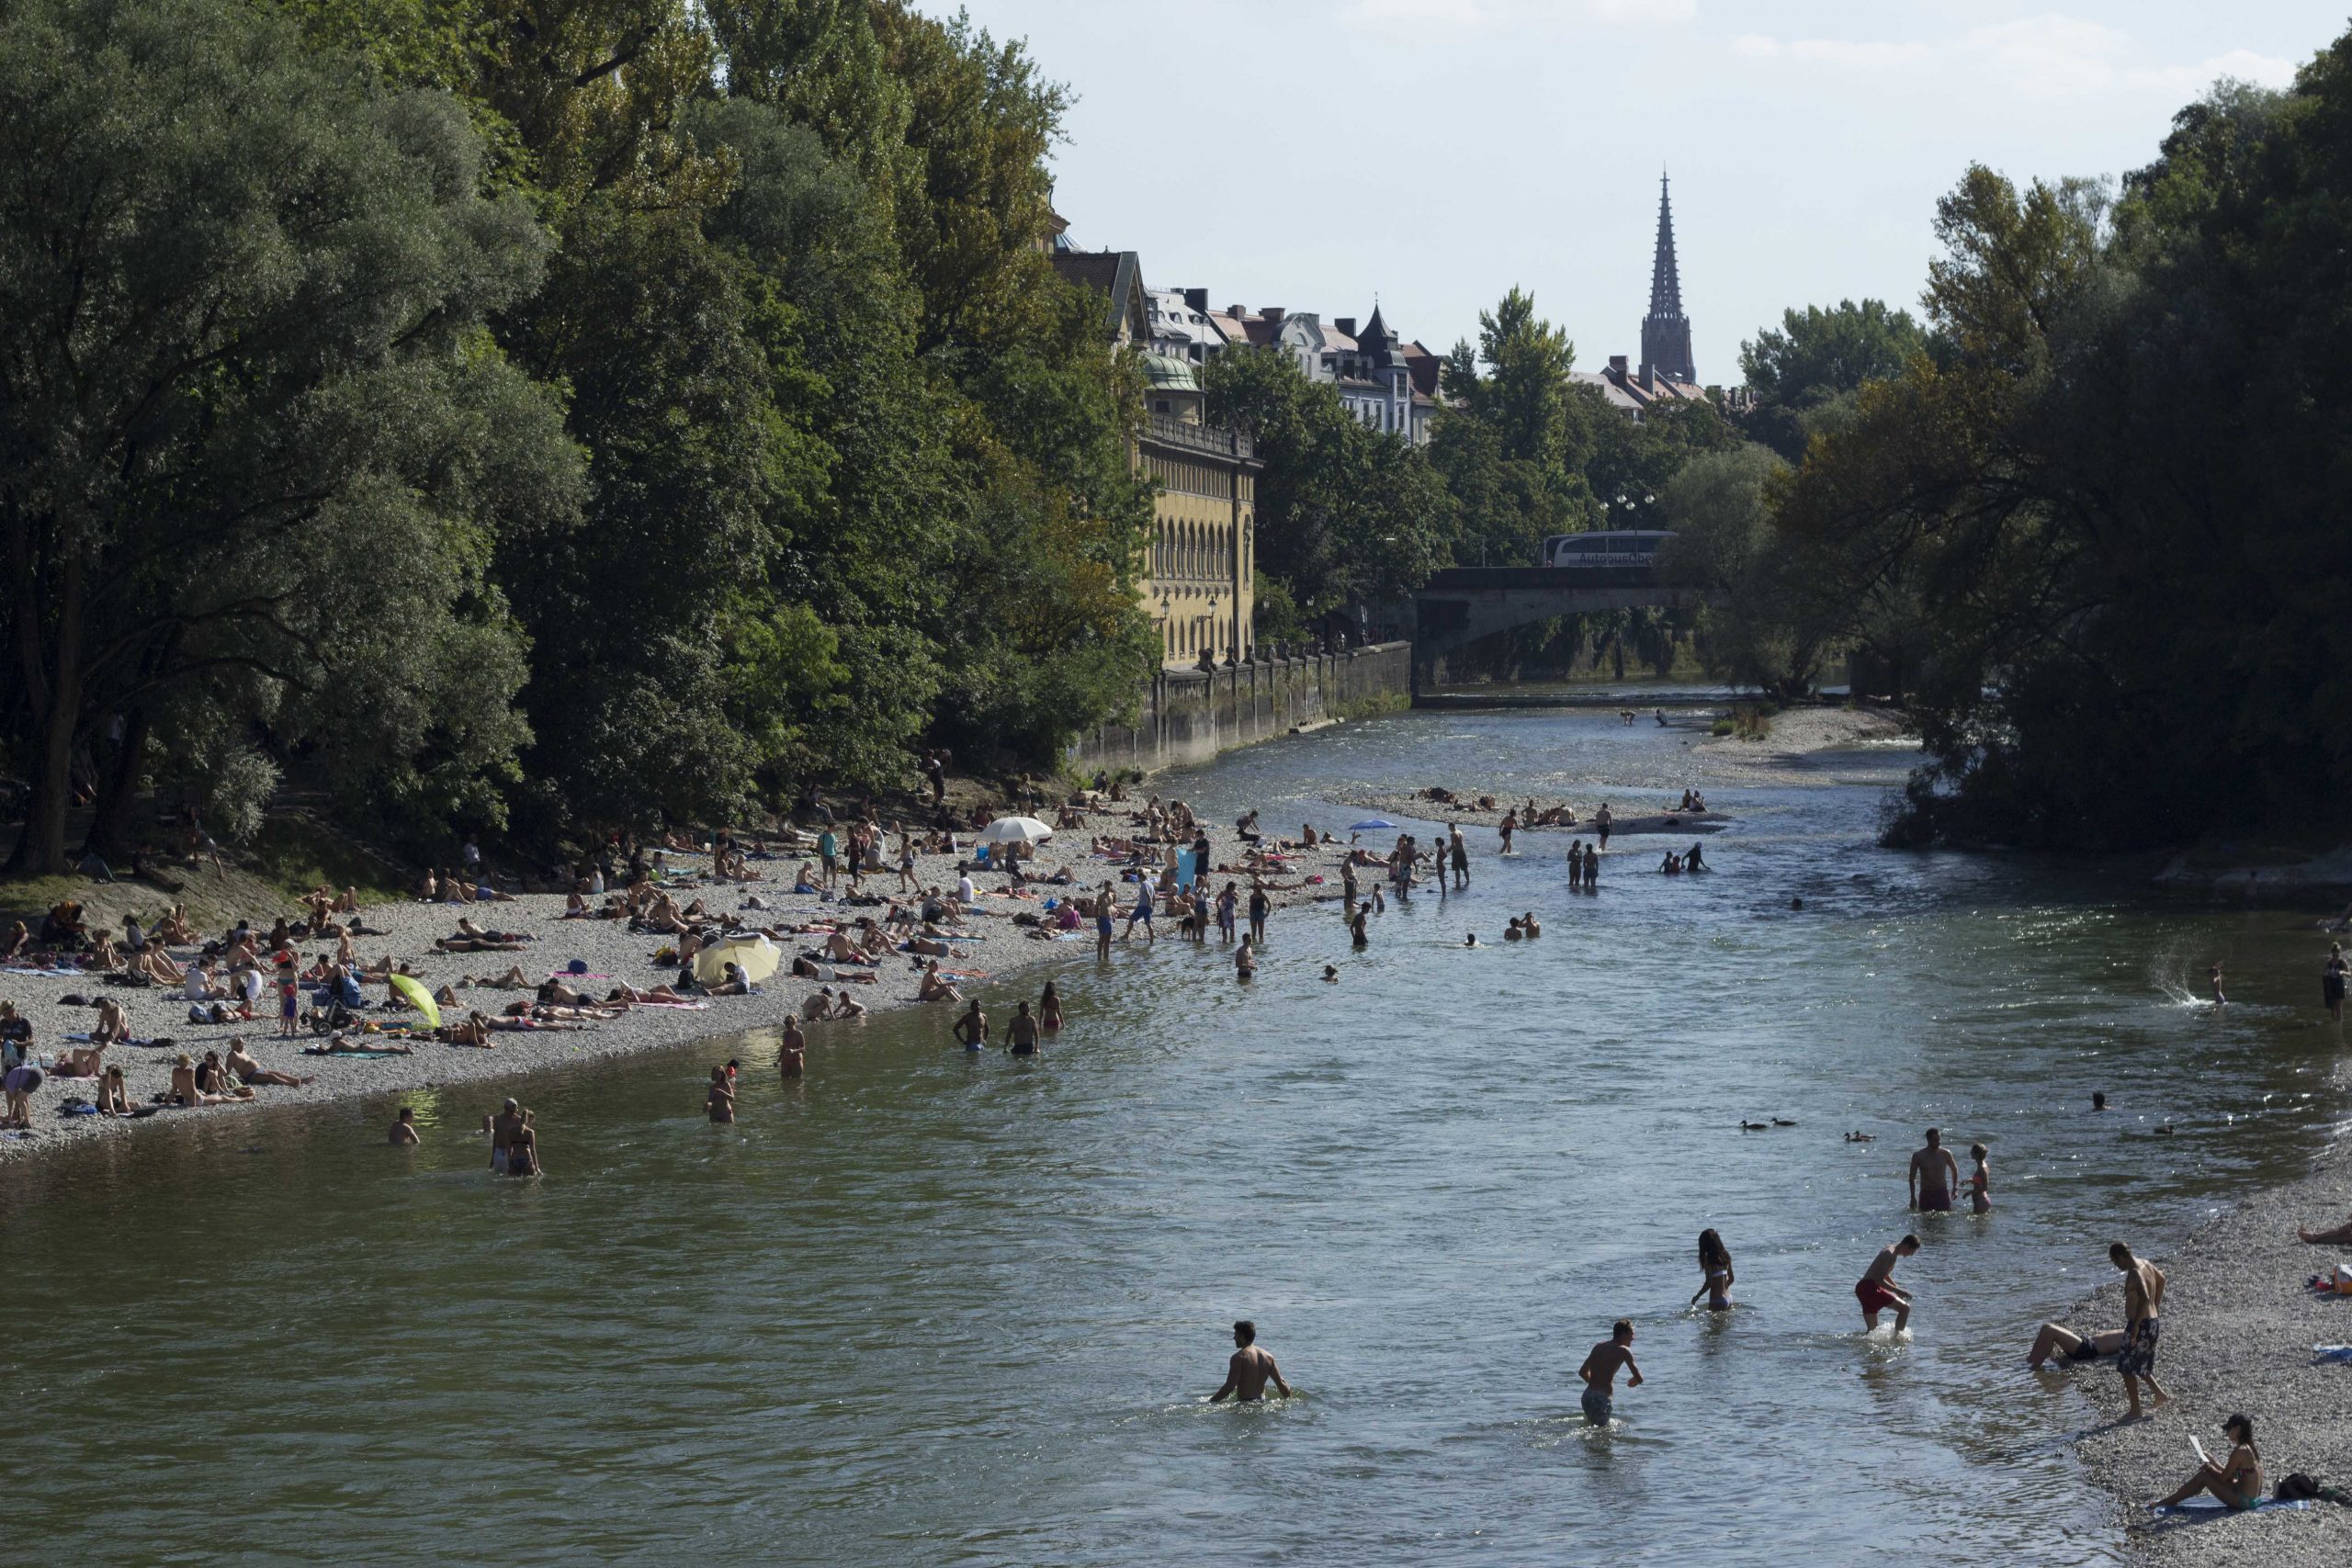 Aliviando o calor do verão em Munique no rio Isar, que banha a cidade